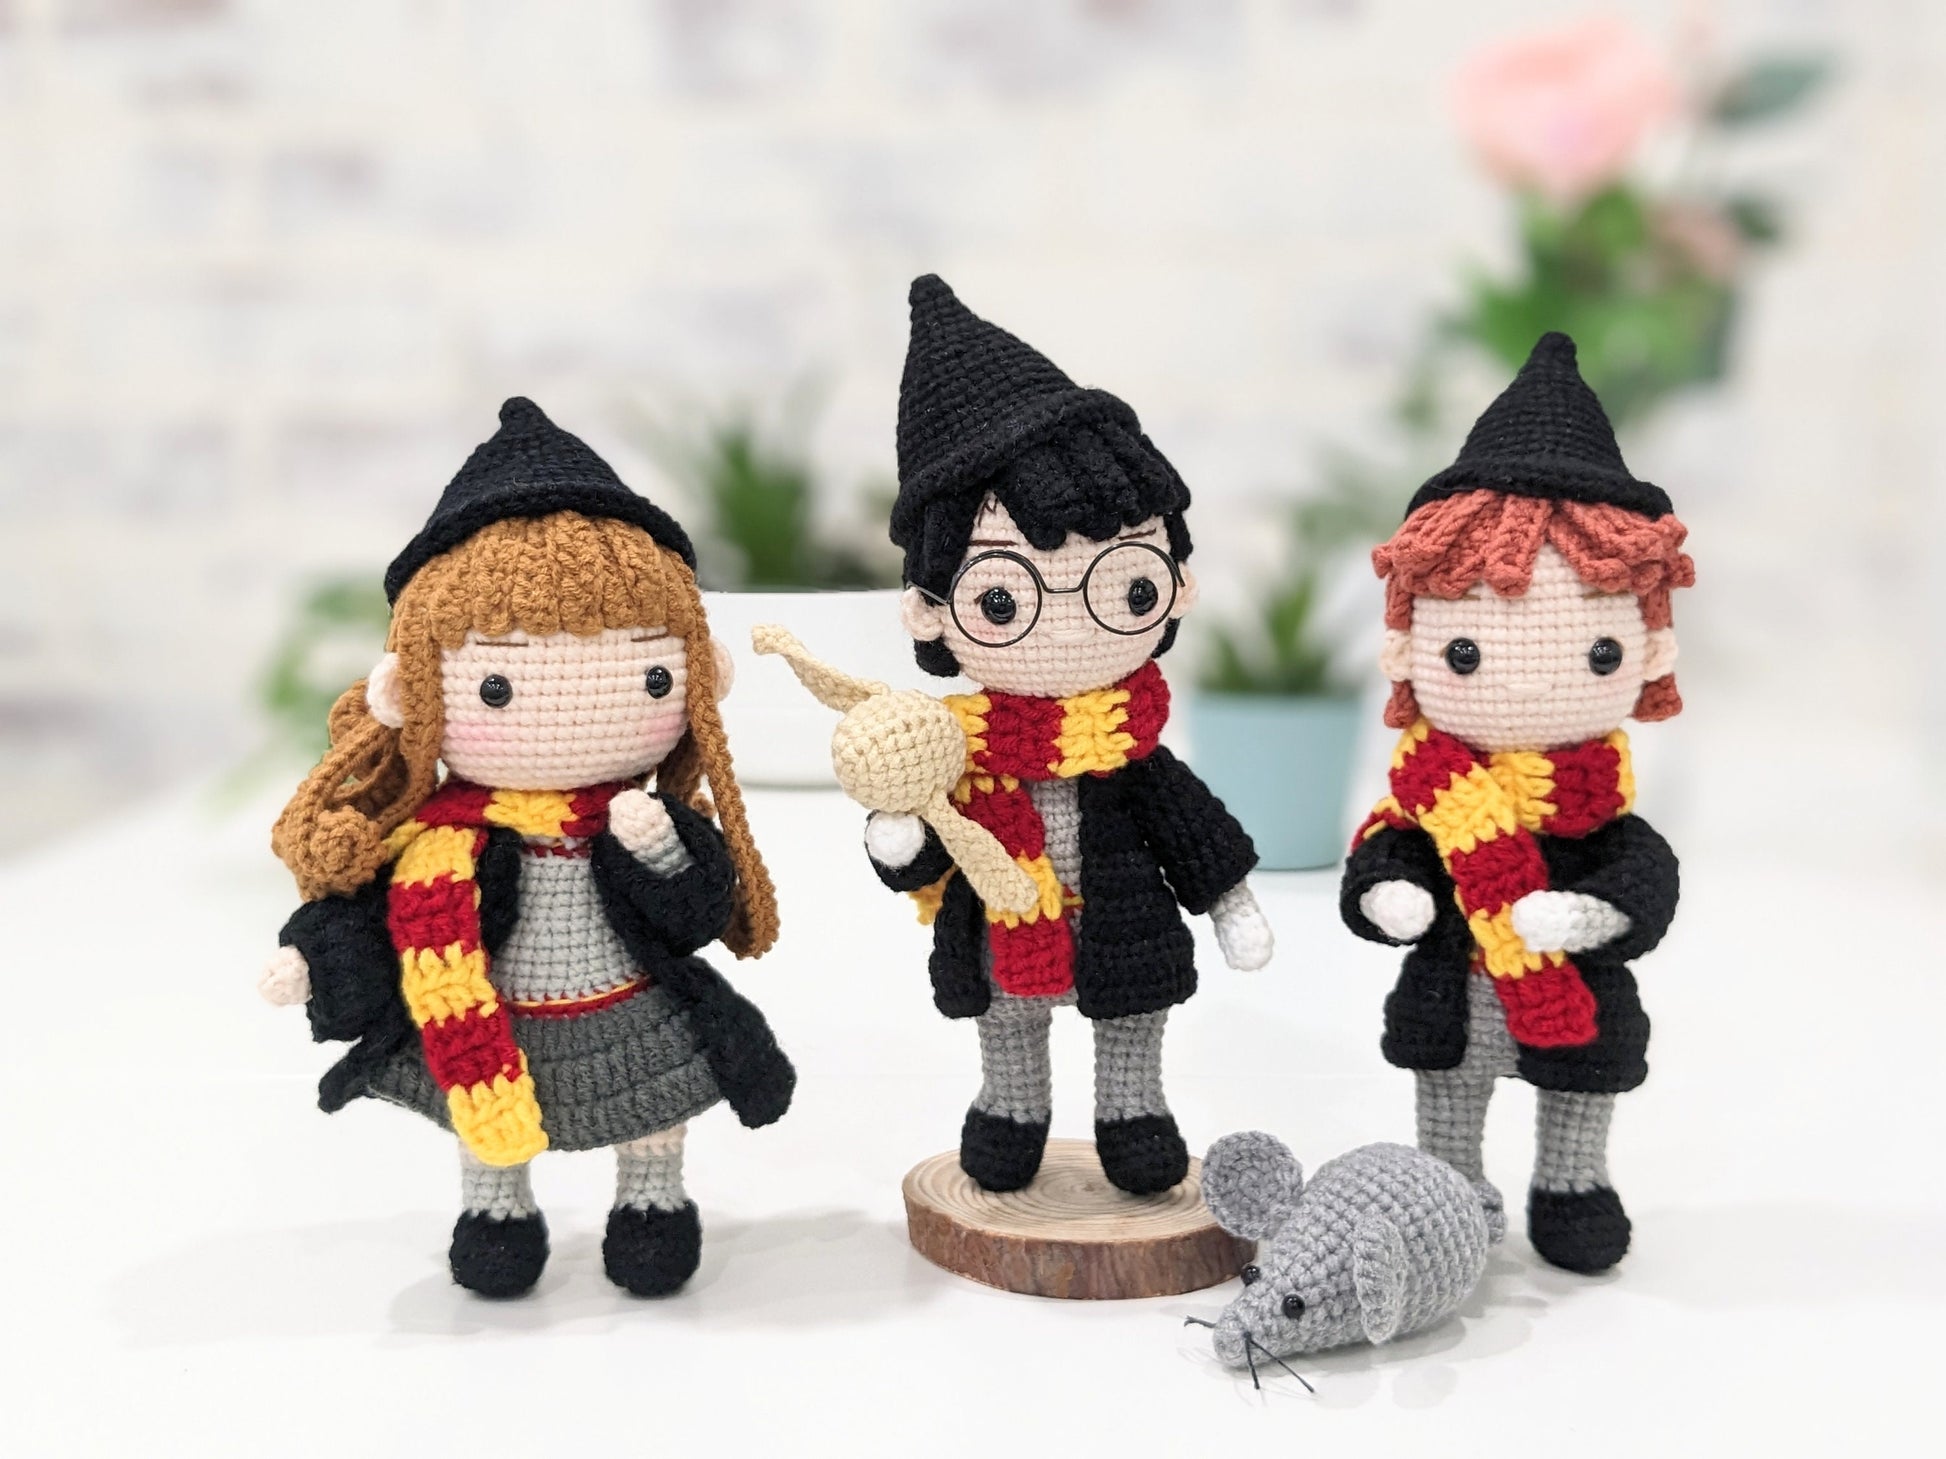 Harry Potter Dolls Doll Hermione Granger, Ron Hogwarts Figures, Harry  Potter